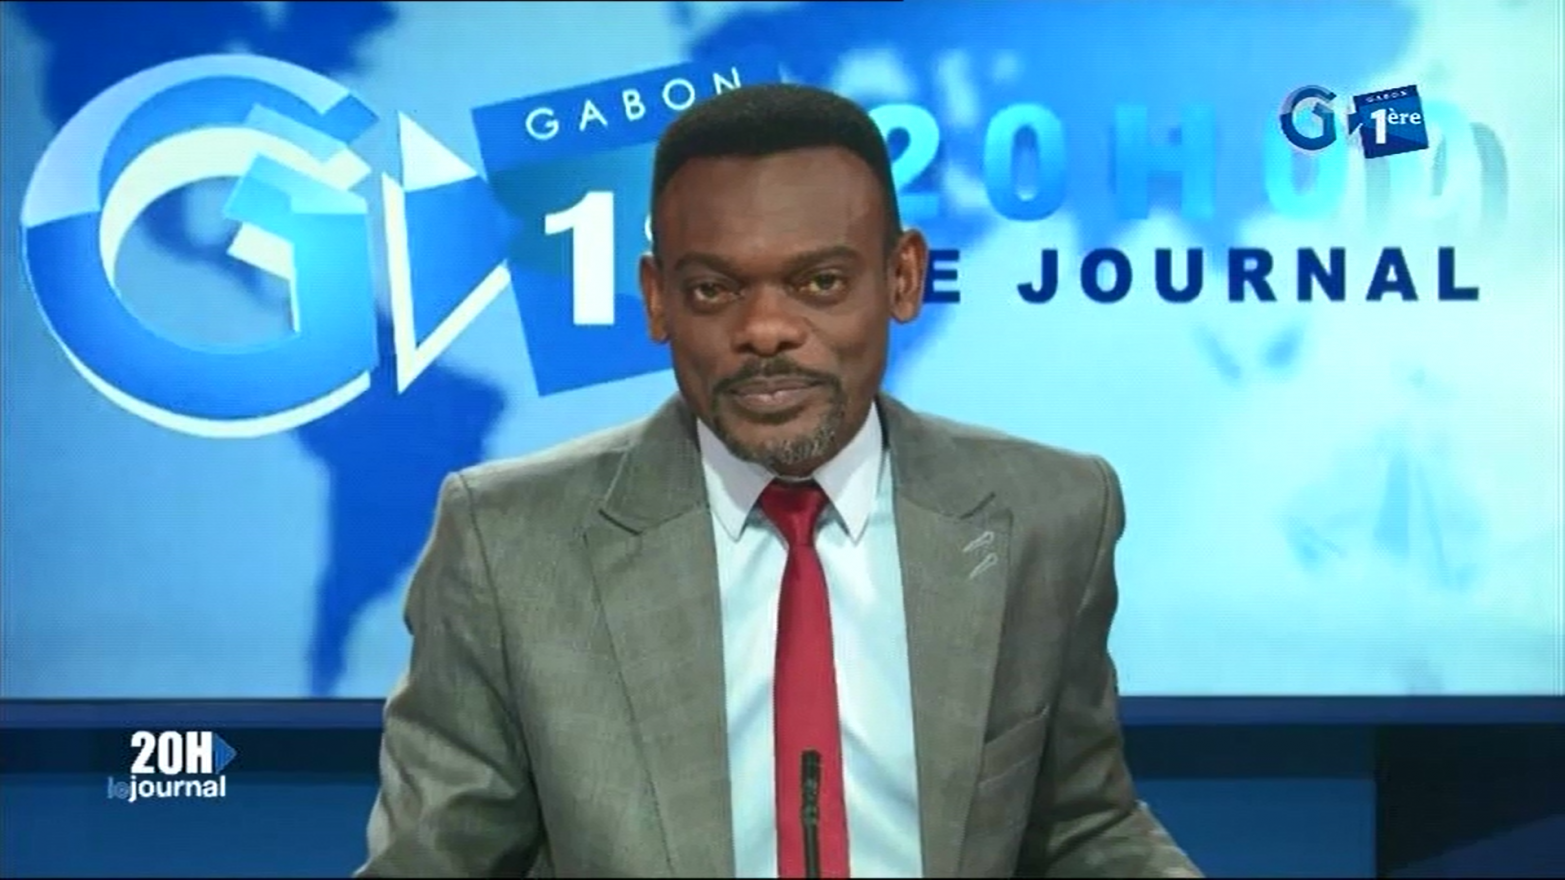 Journal télévisé de 20h de Gabon 1ère du 17 juillet 2019
